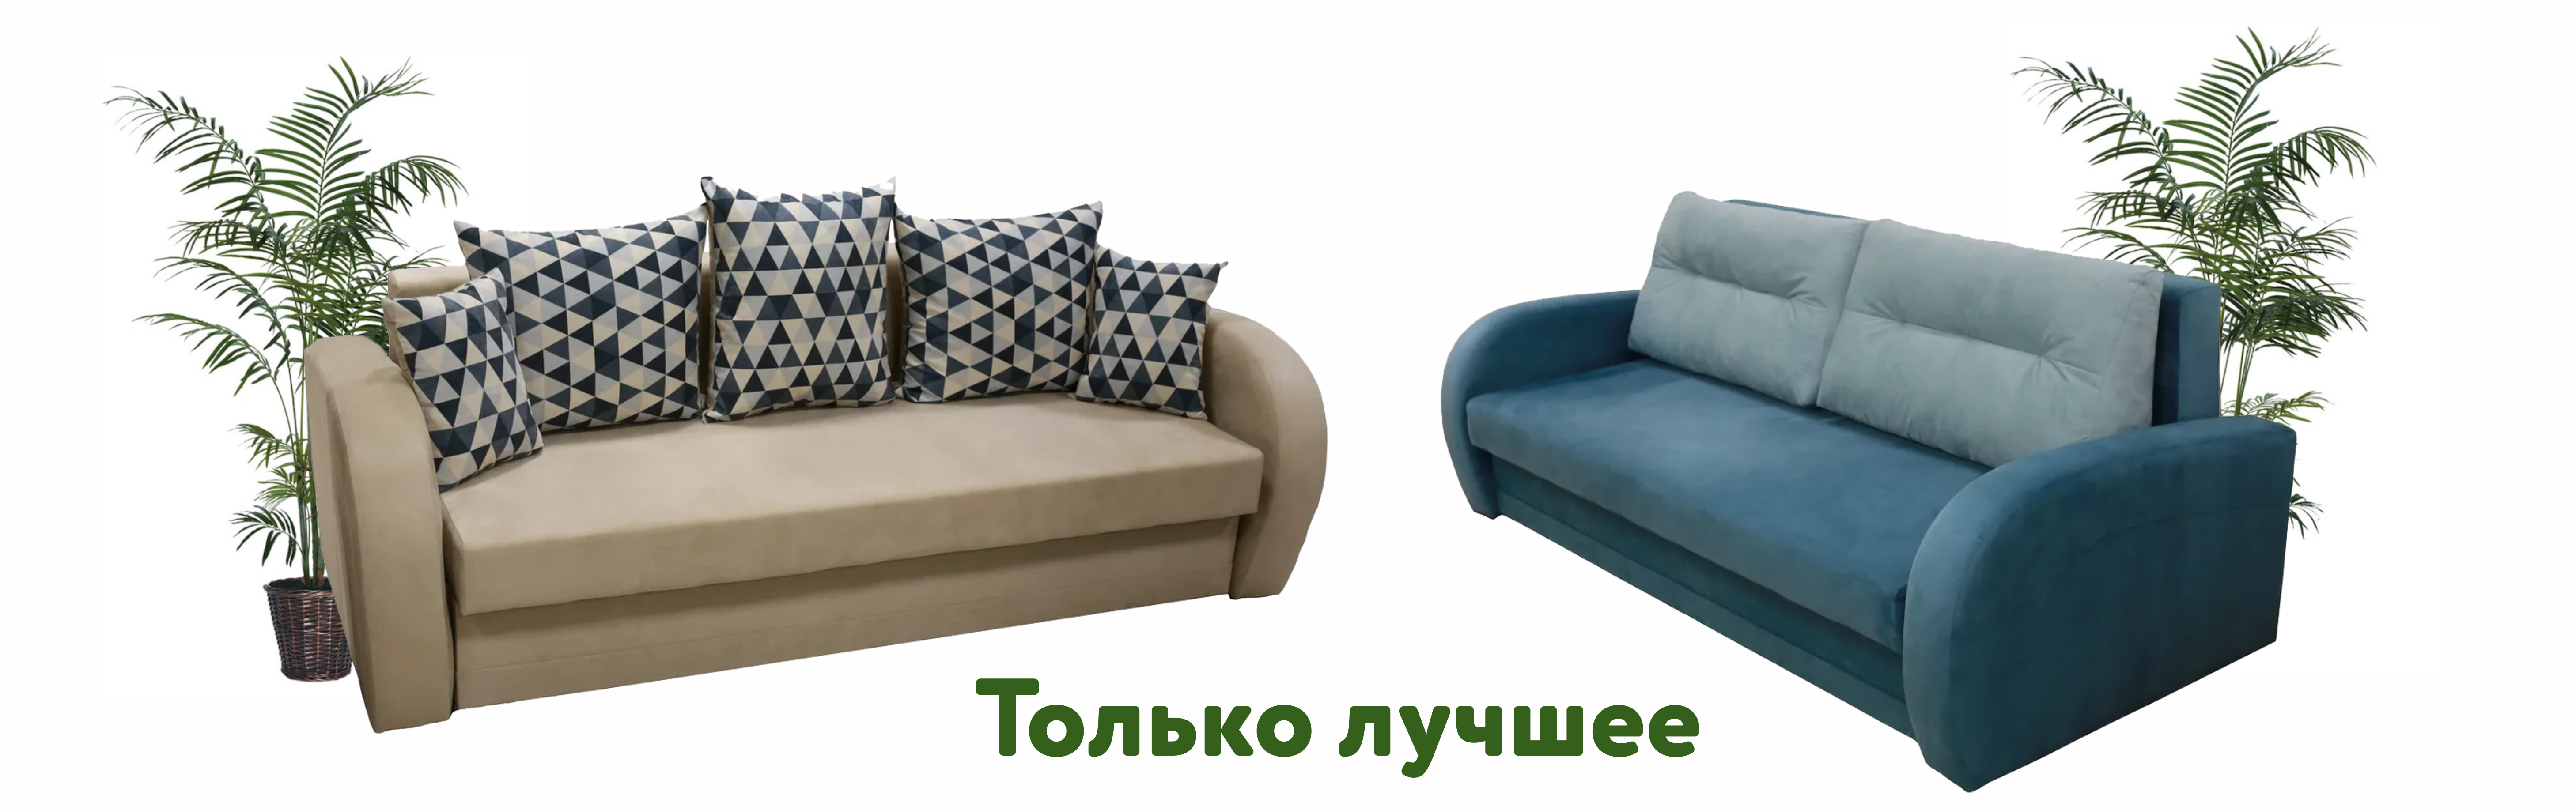 Мебельные Магазины В Калининграде Цены